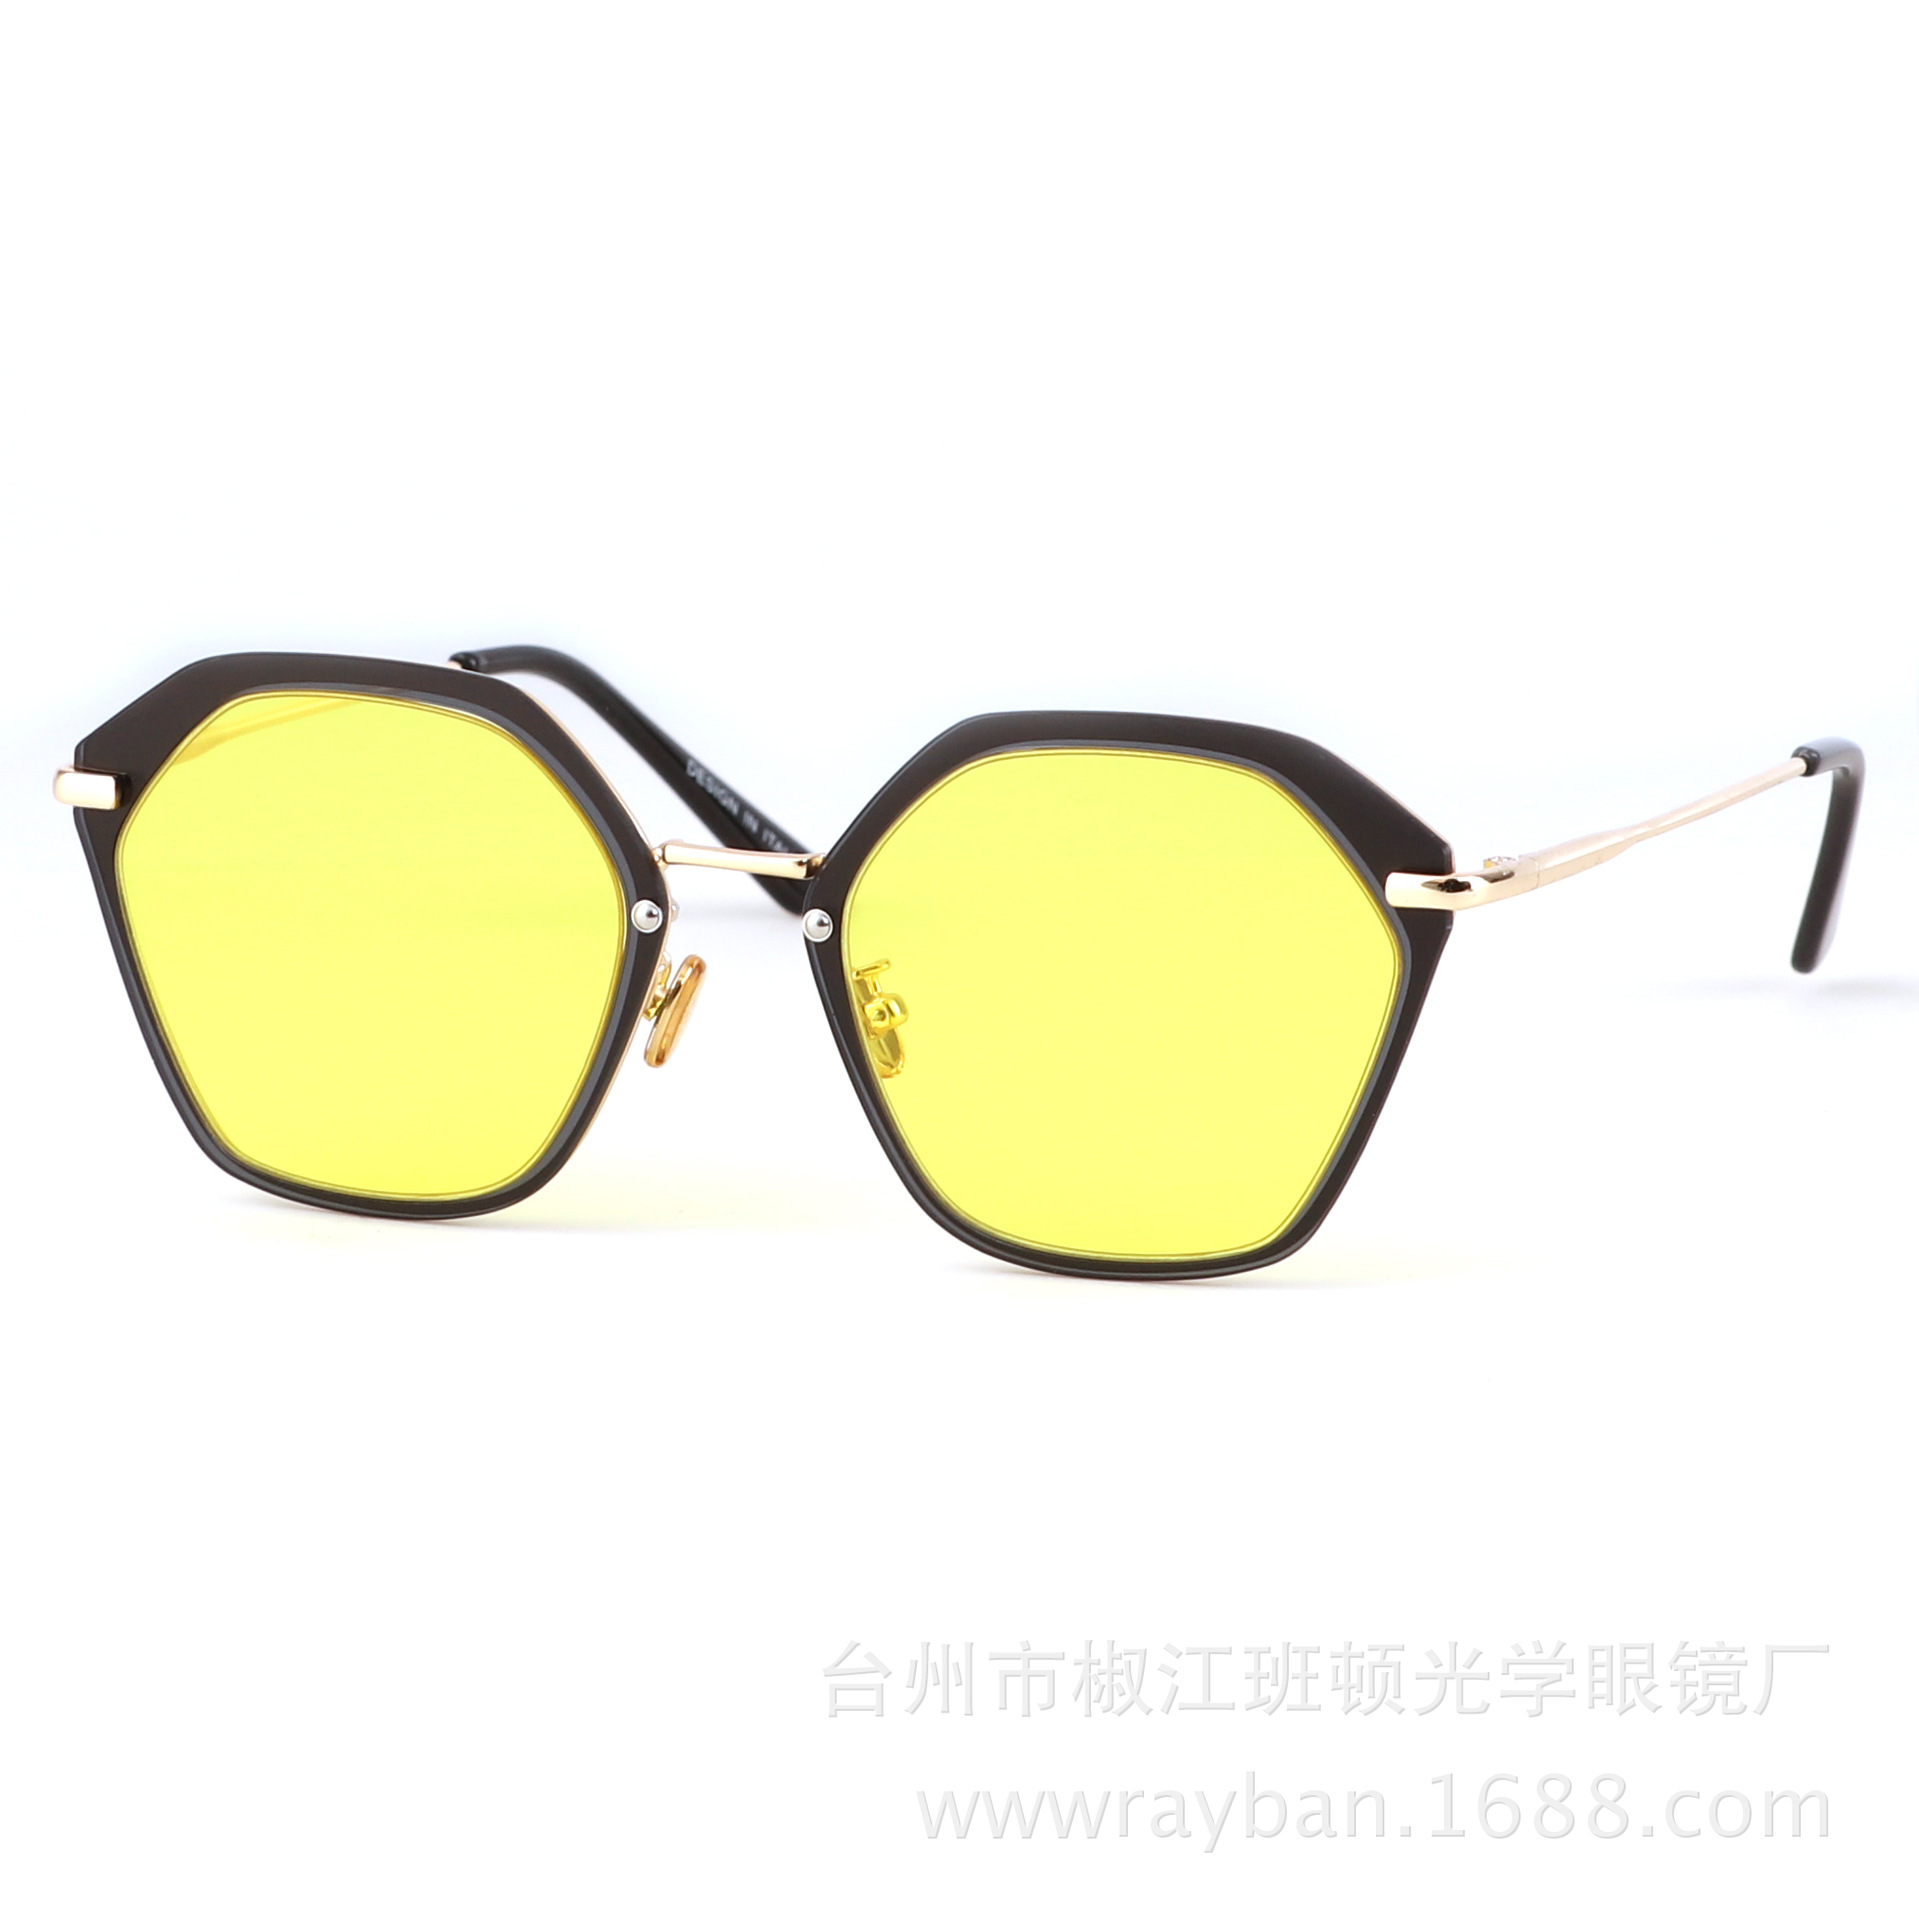 新款ZSA ZSA GABOR/085 彩色太阳镜男女款复古墨镜偏光眼镜工厂批